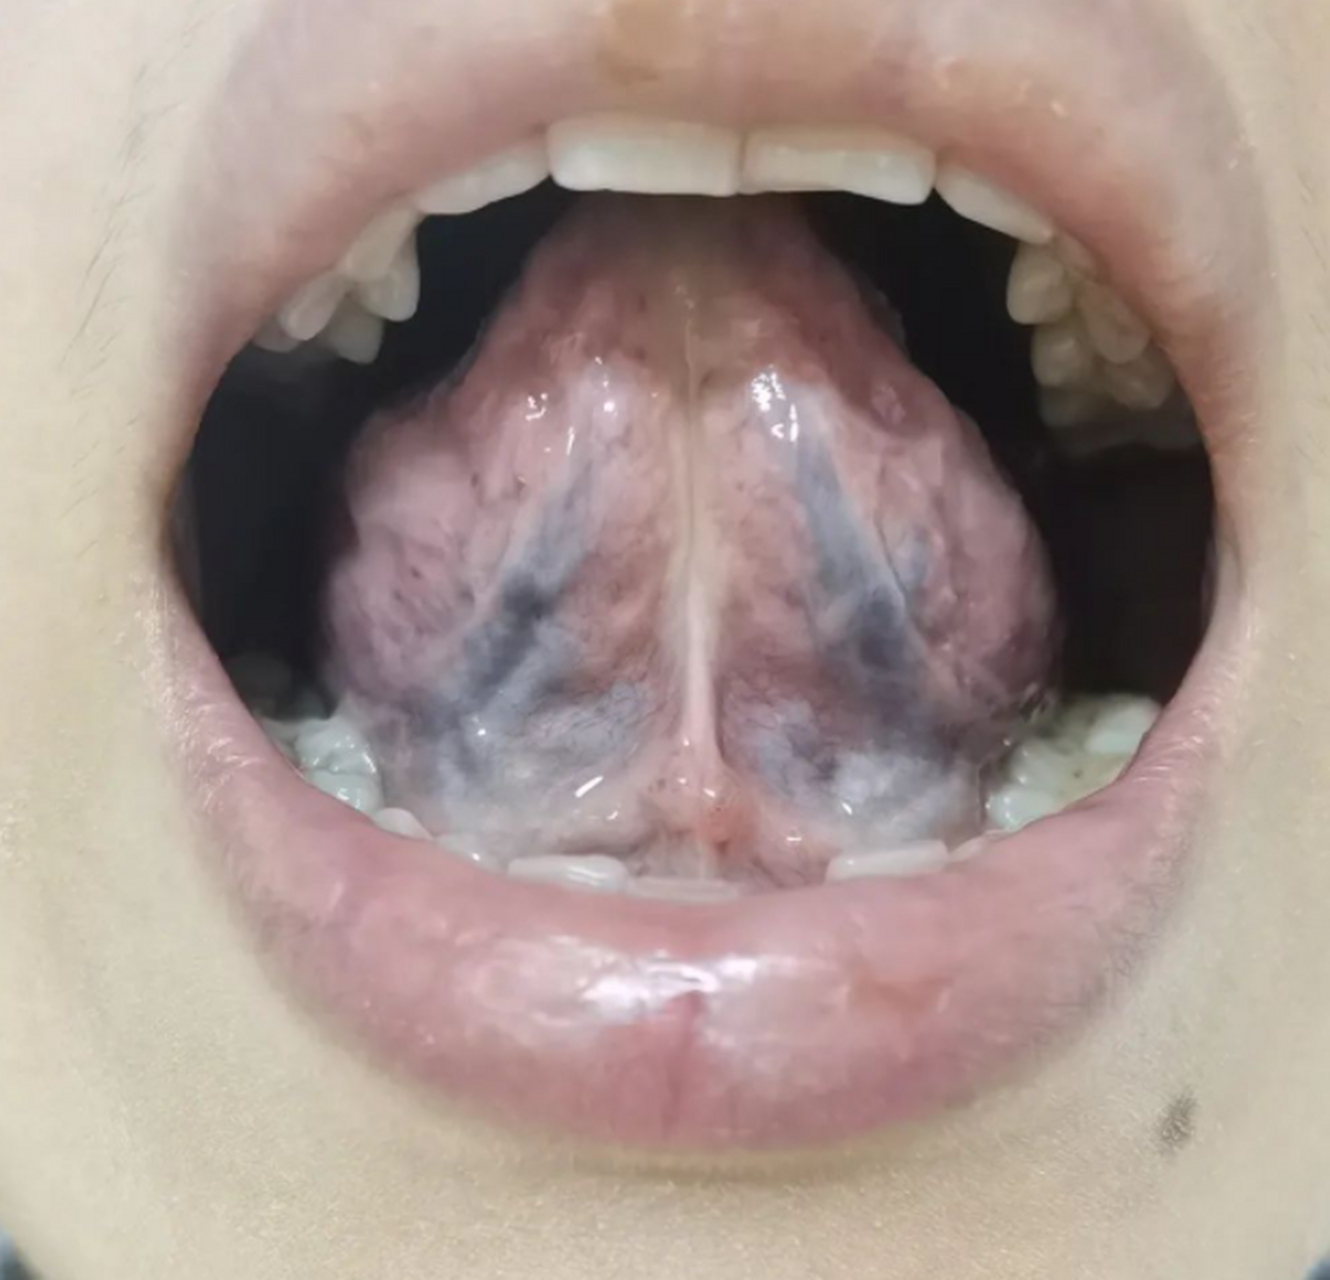 舌质淡白,半透明感  舌苔铺满舌体胖大,舌中舌根,苔白,凹陷